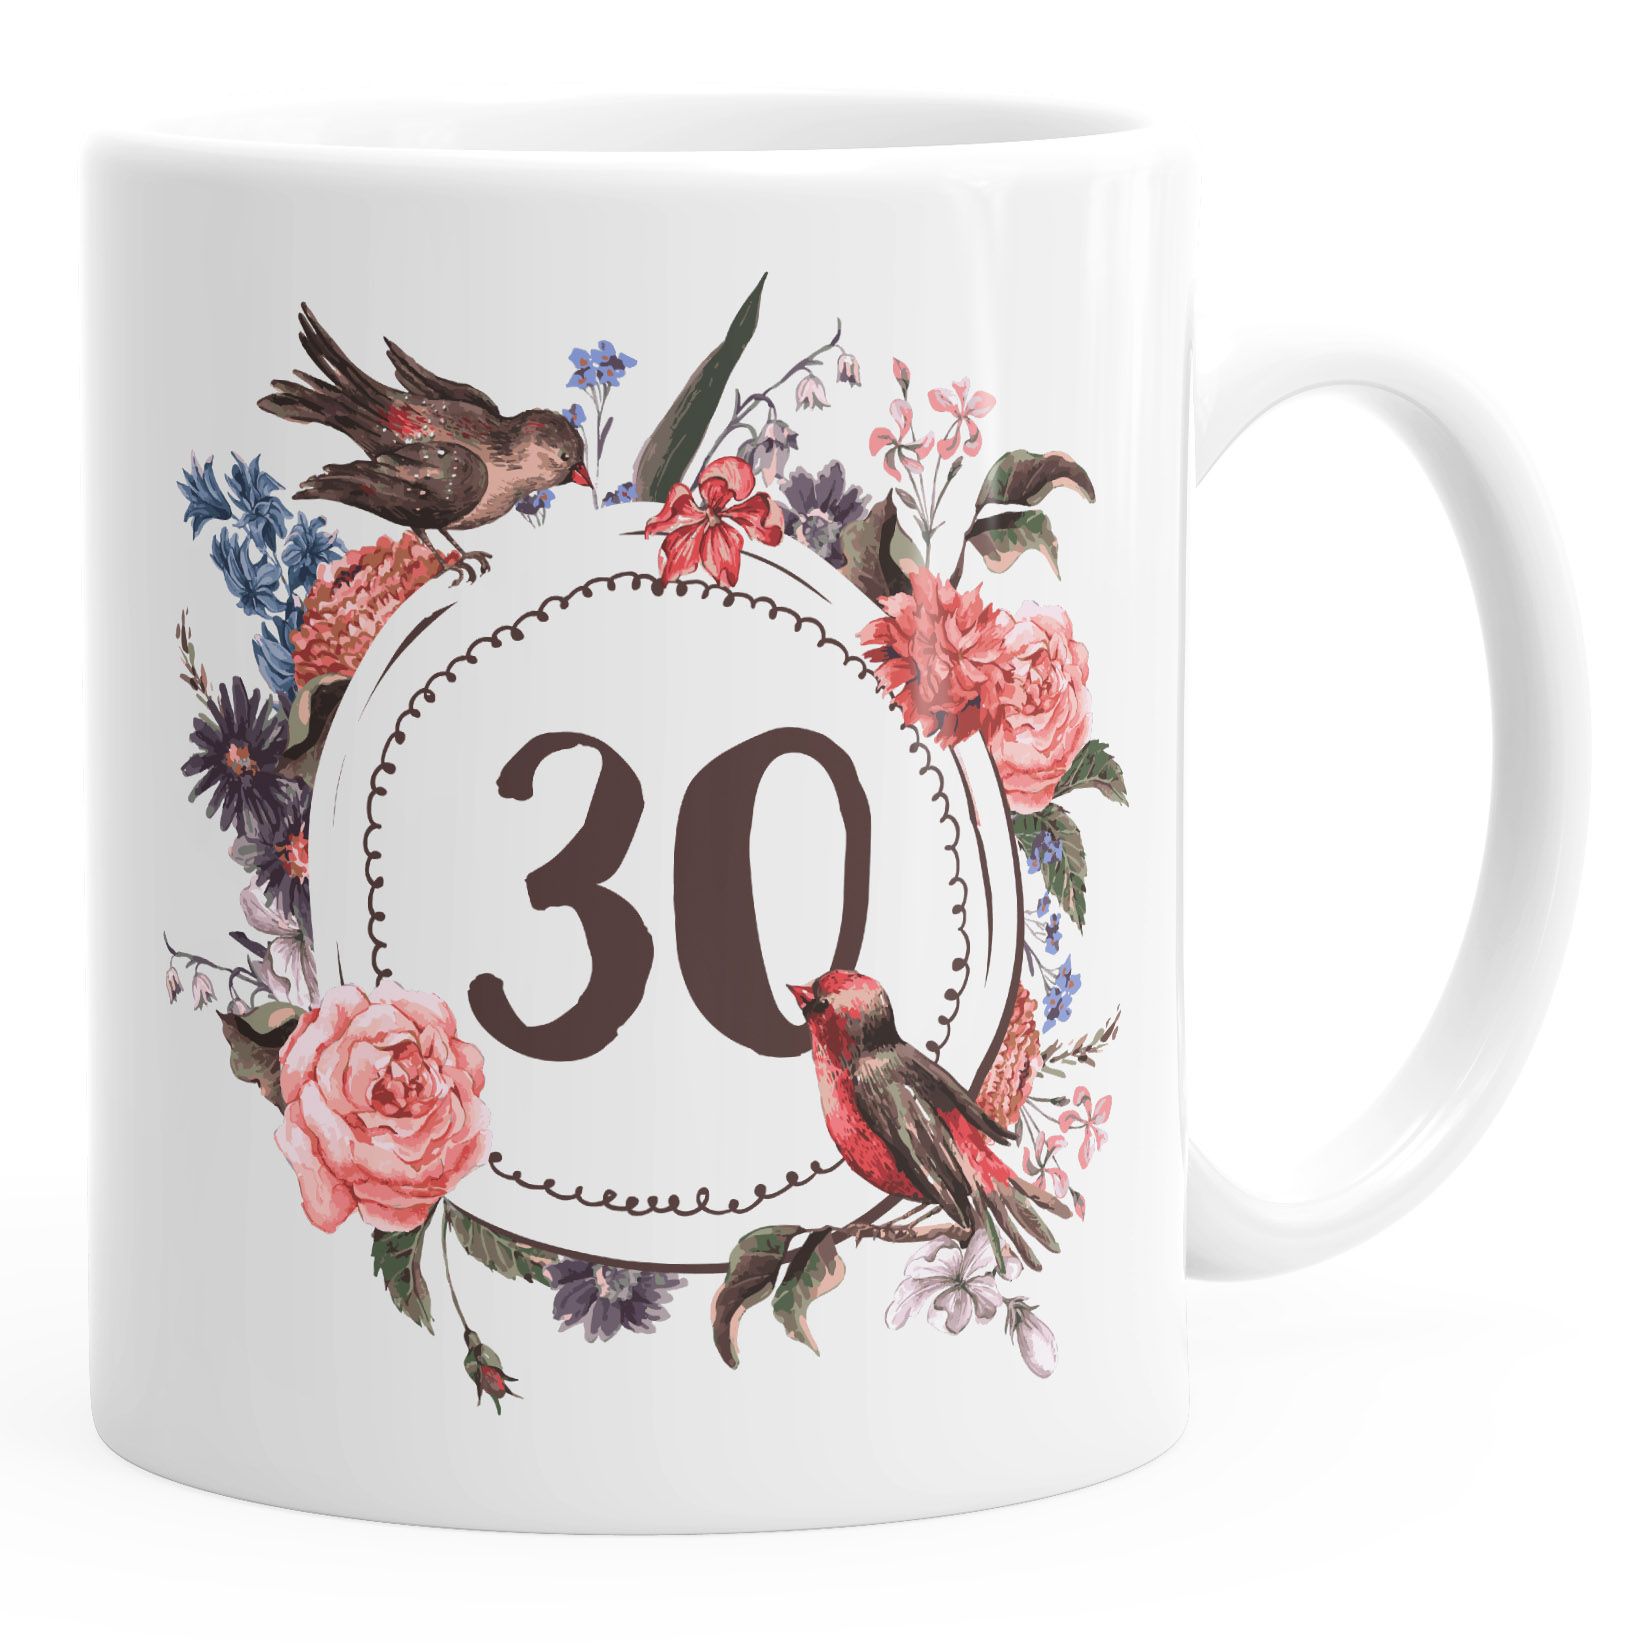 Geburtstags-Tasse {style_variation} {{style_variation}_ausgeschrieben} Geschenk-Tasse Kaffee-Tasse Blumen Blüten Blumenkranz MoonWorks®